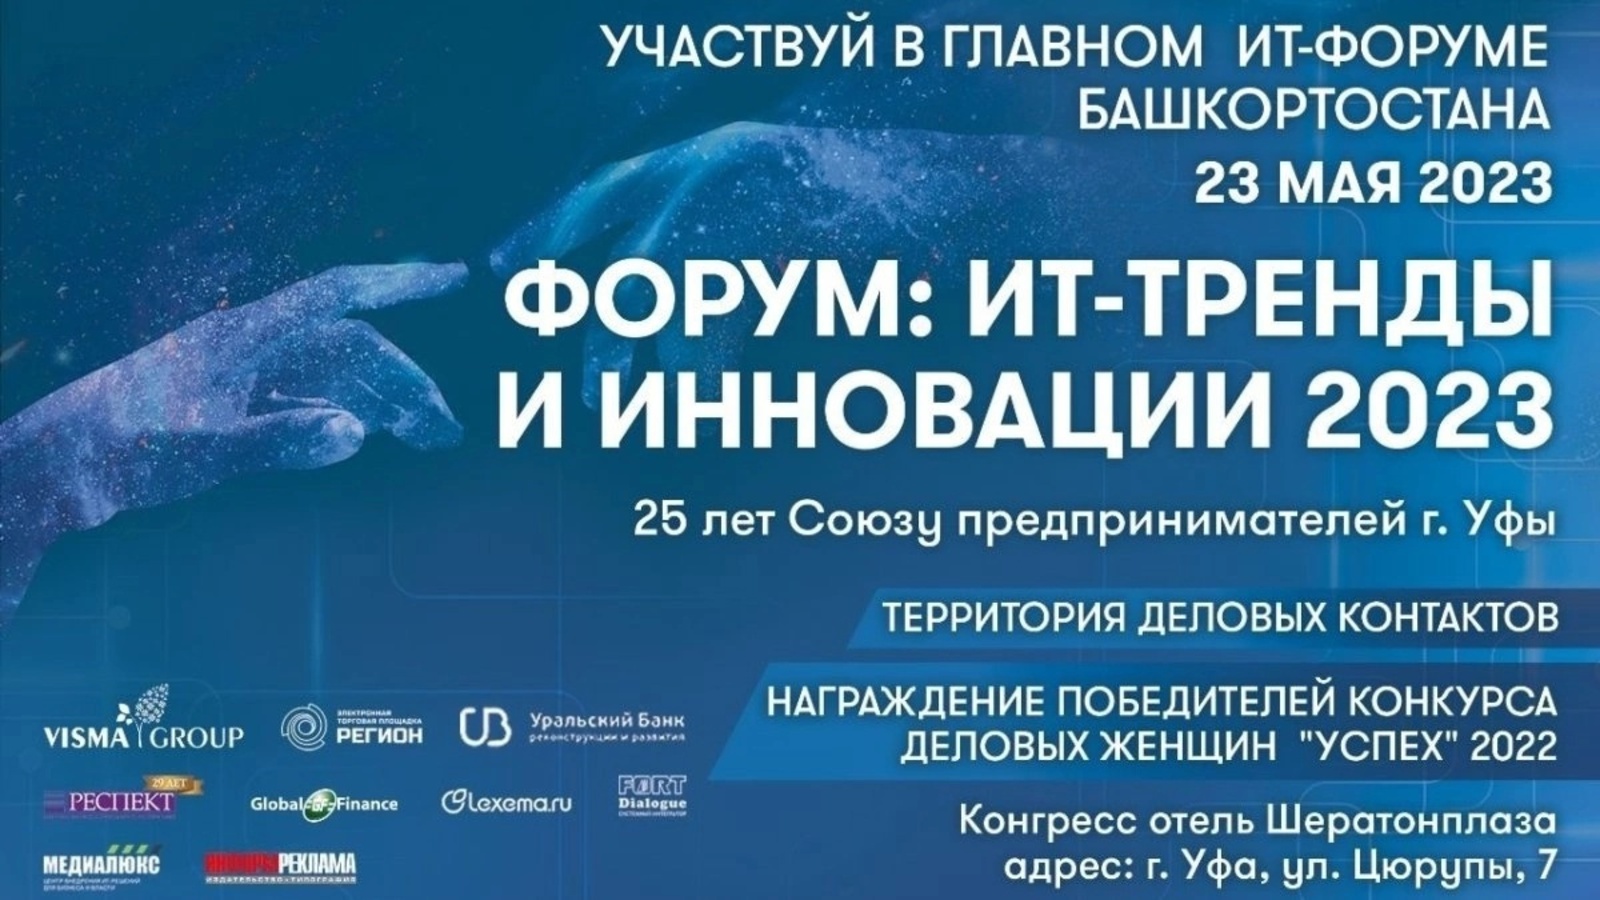 В Башкортостане впервые пройдет Республиканский форум «ИТ-тренды и инновации - 2023»